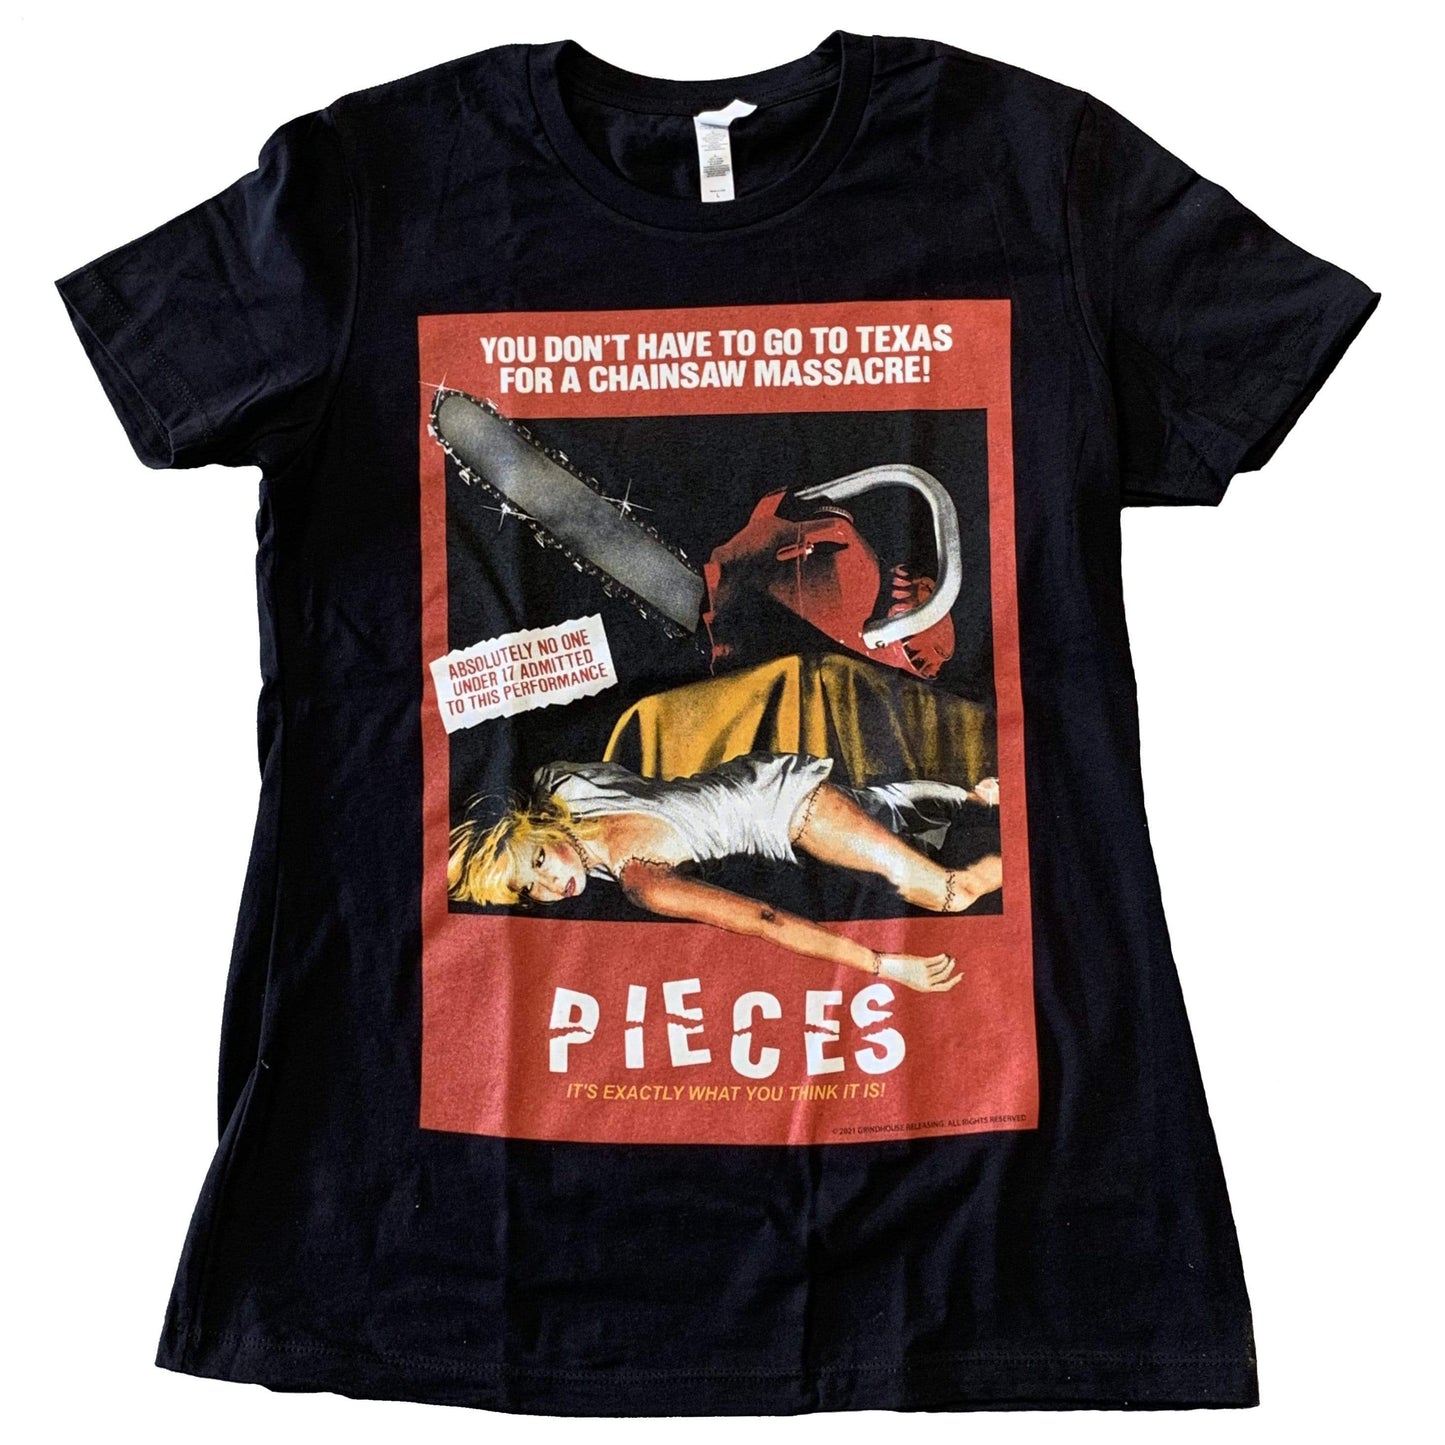 PIECES Women's T-shirt : 1983 Poster Art